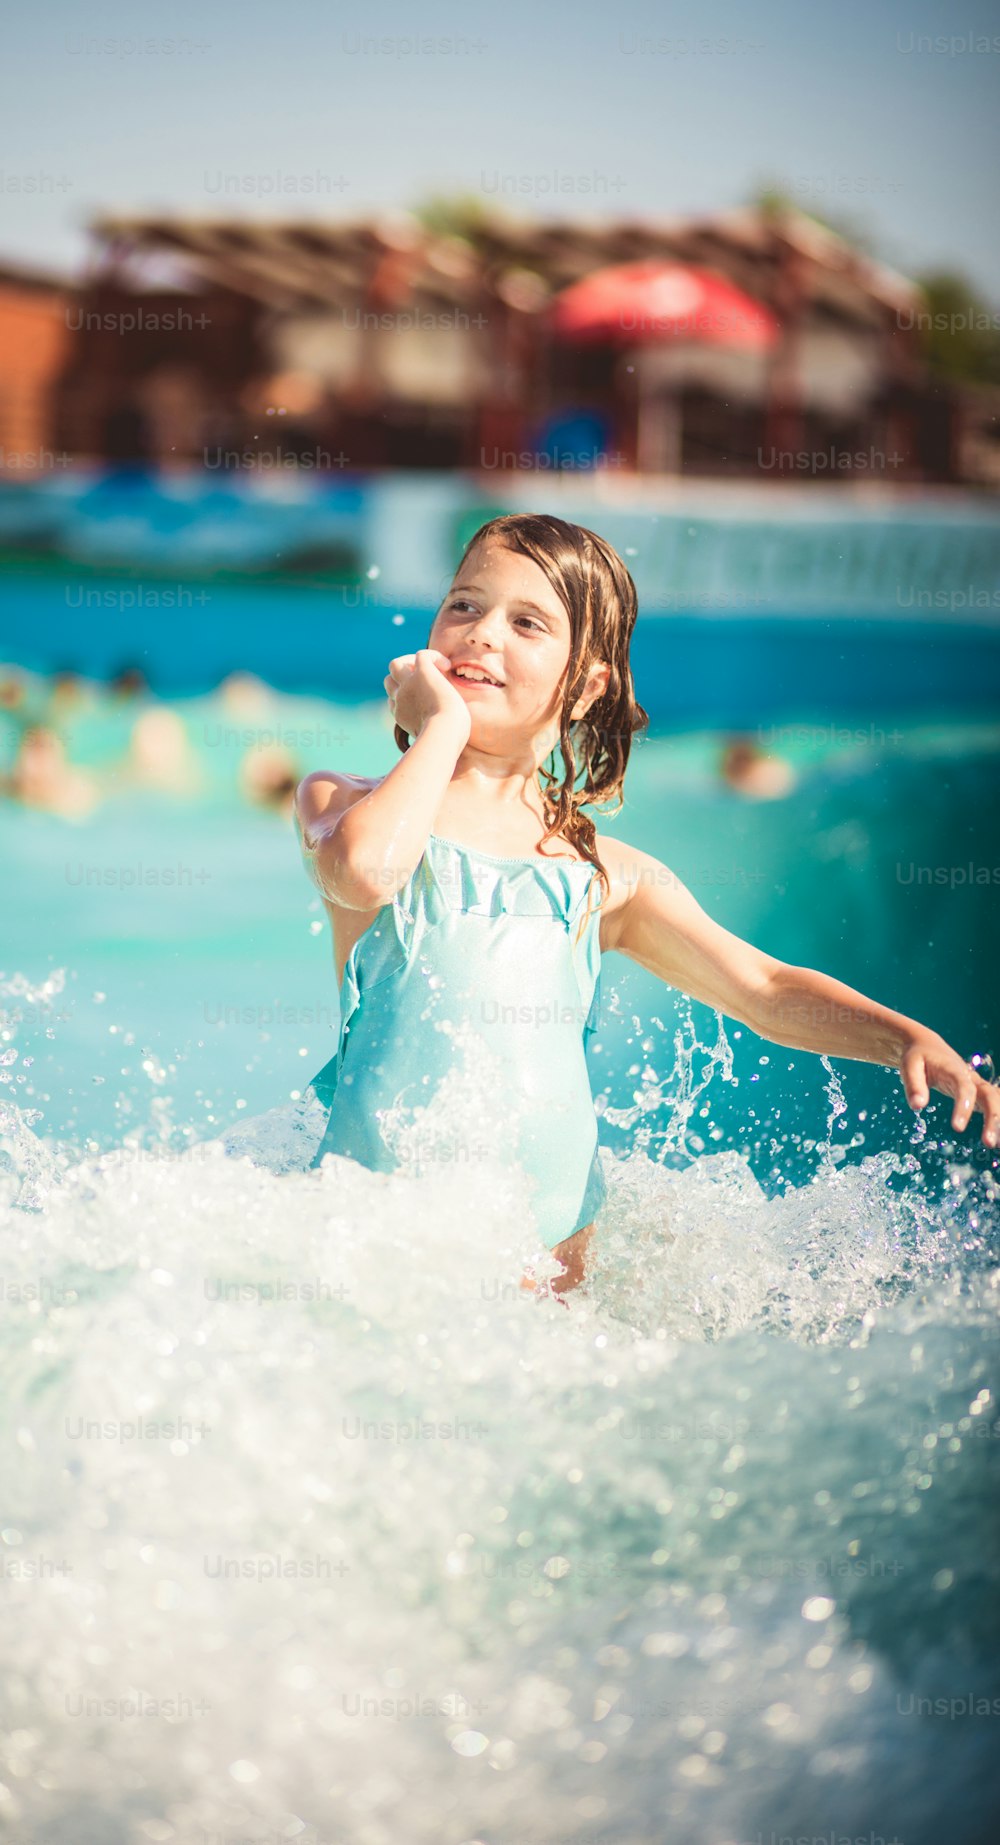 Waves est tellement amusant. Enfant s’amusant dans la piscine.